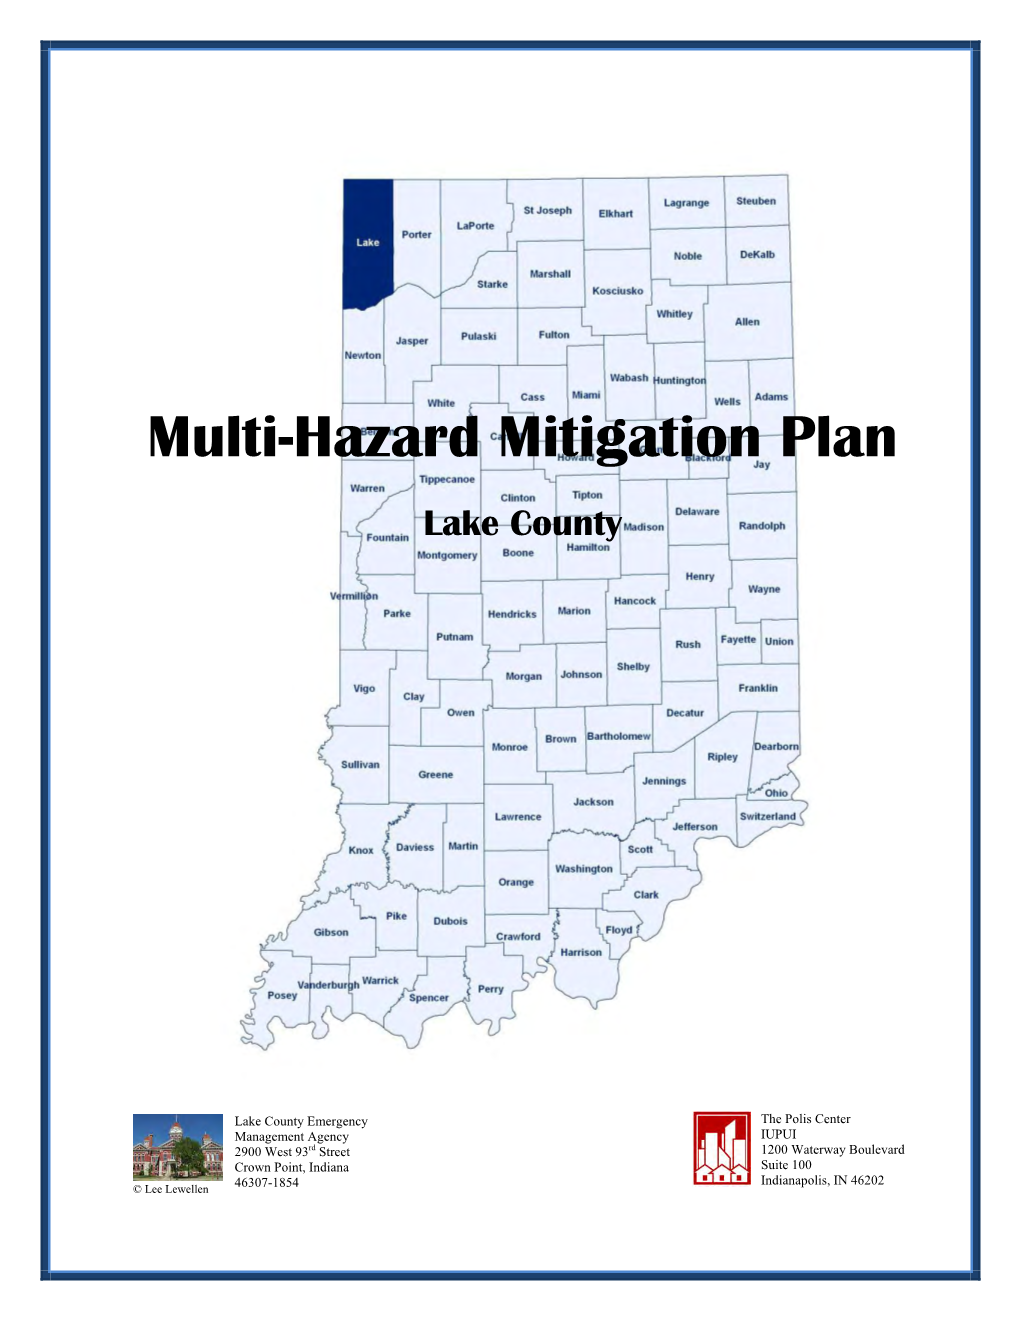 Lake County Multi-Hazard Mitigation Plan Adopted: October 2010